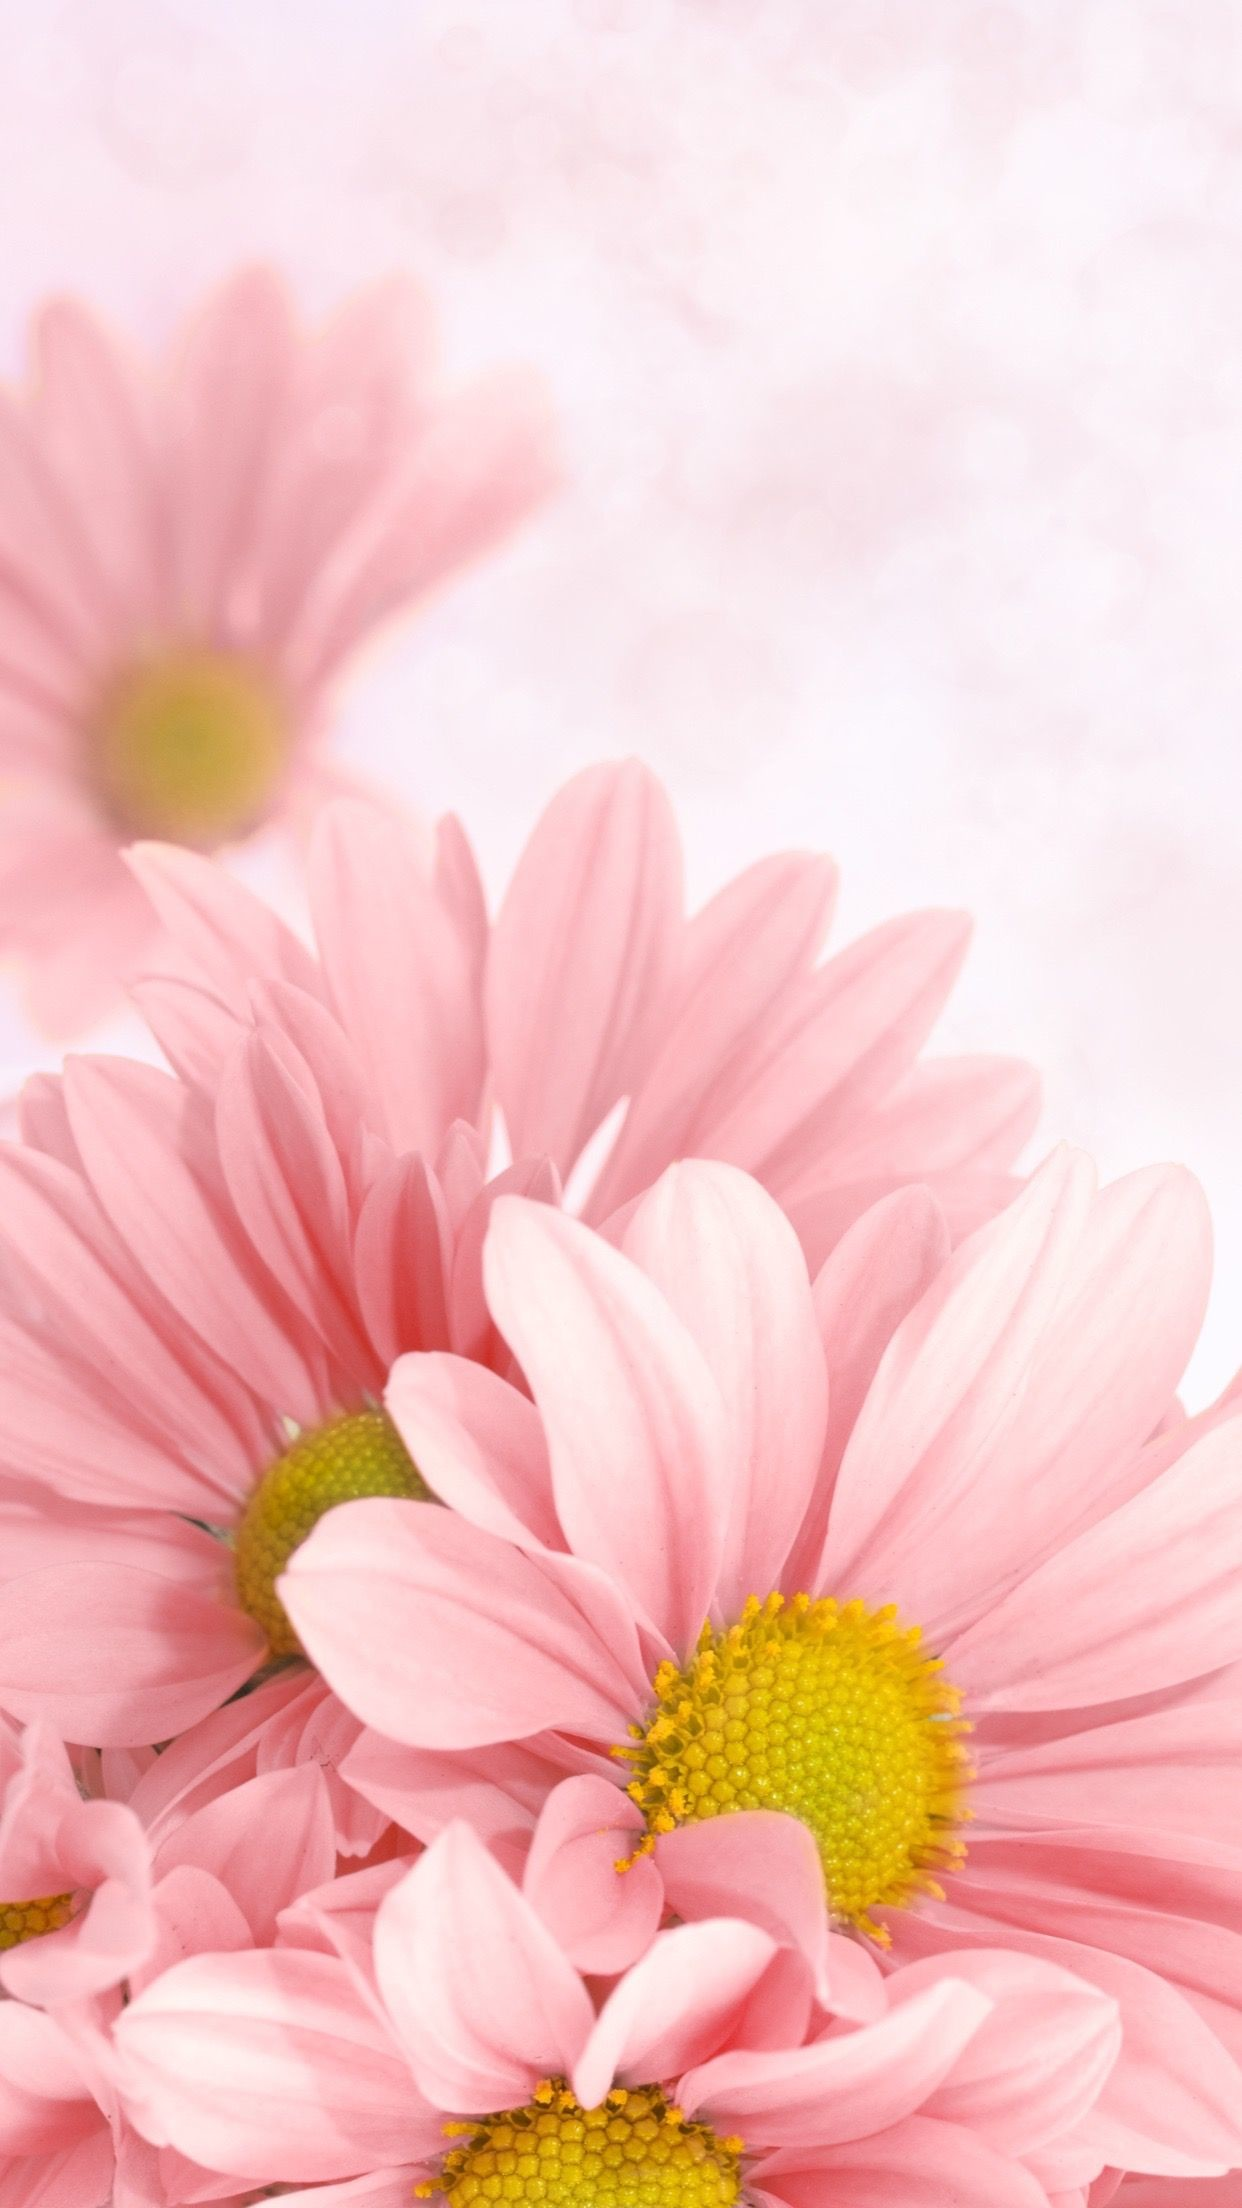 Hình nền bông hoa đẹp rực rỡ chất lượng cao siêu nét 10000 bông hoa đẹp   ảnh hoa miễn phí